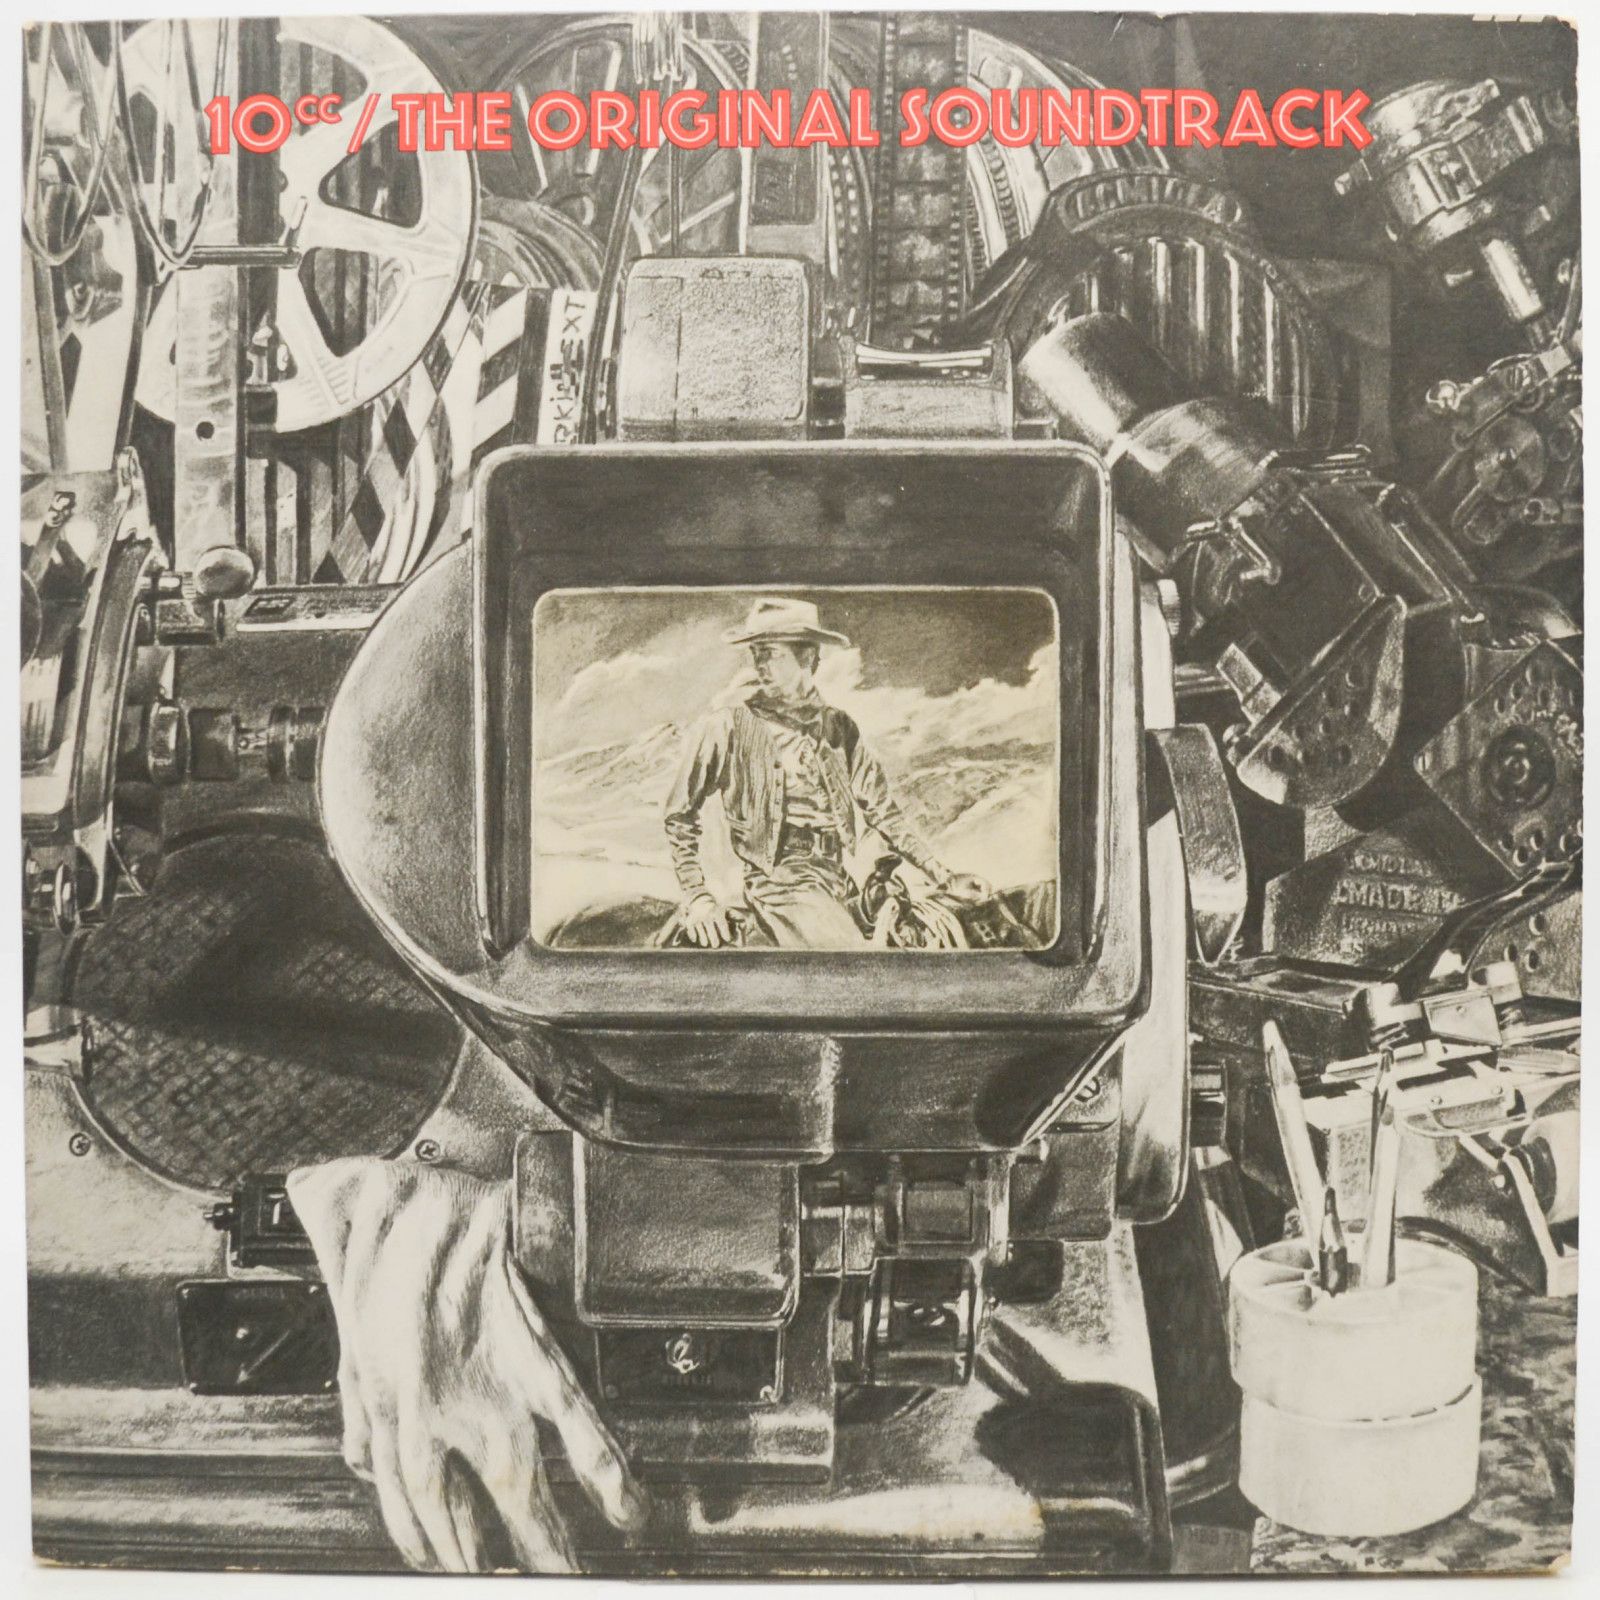 10cc — The Original Soundtrack (USA), 1975